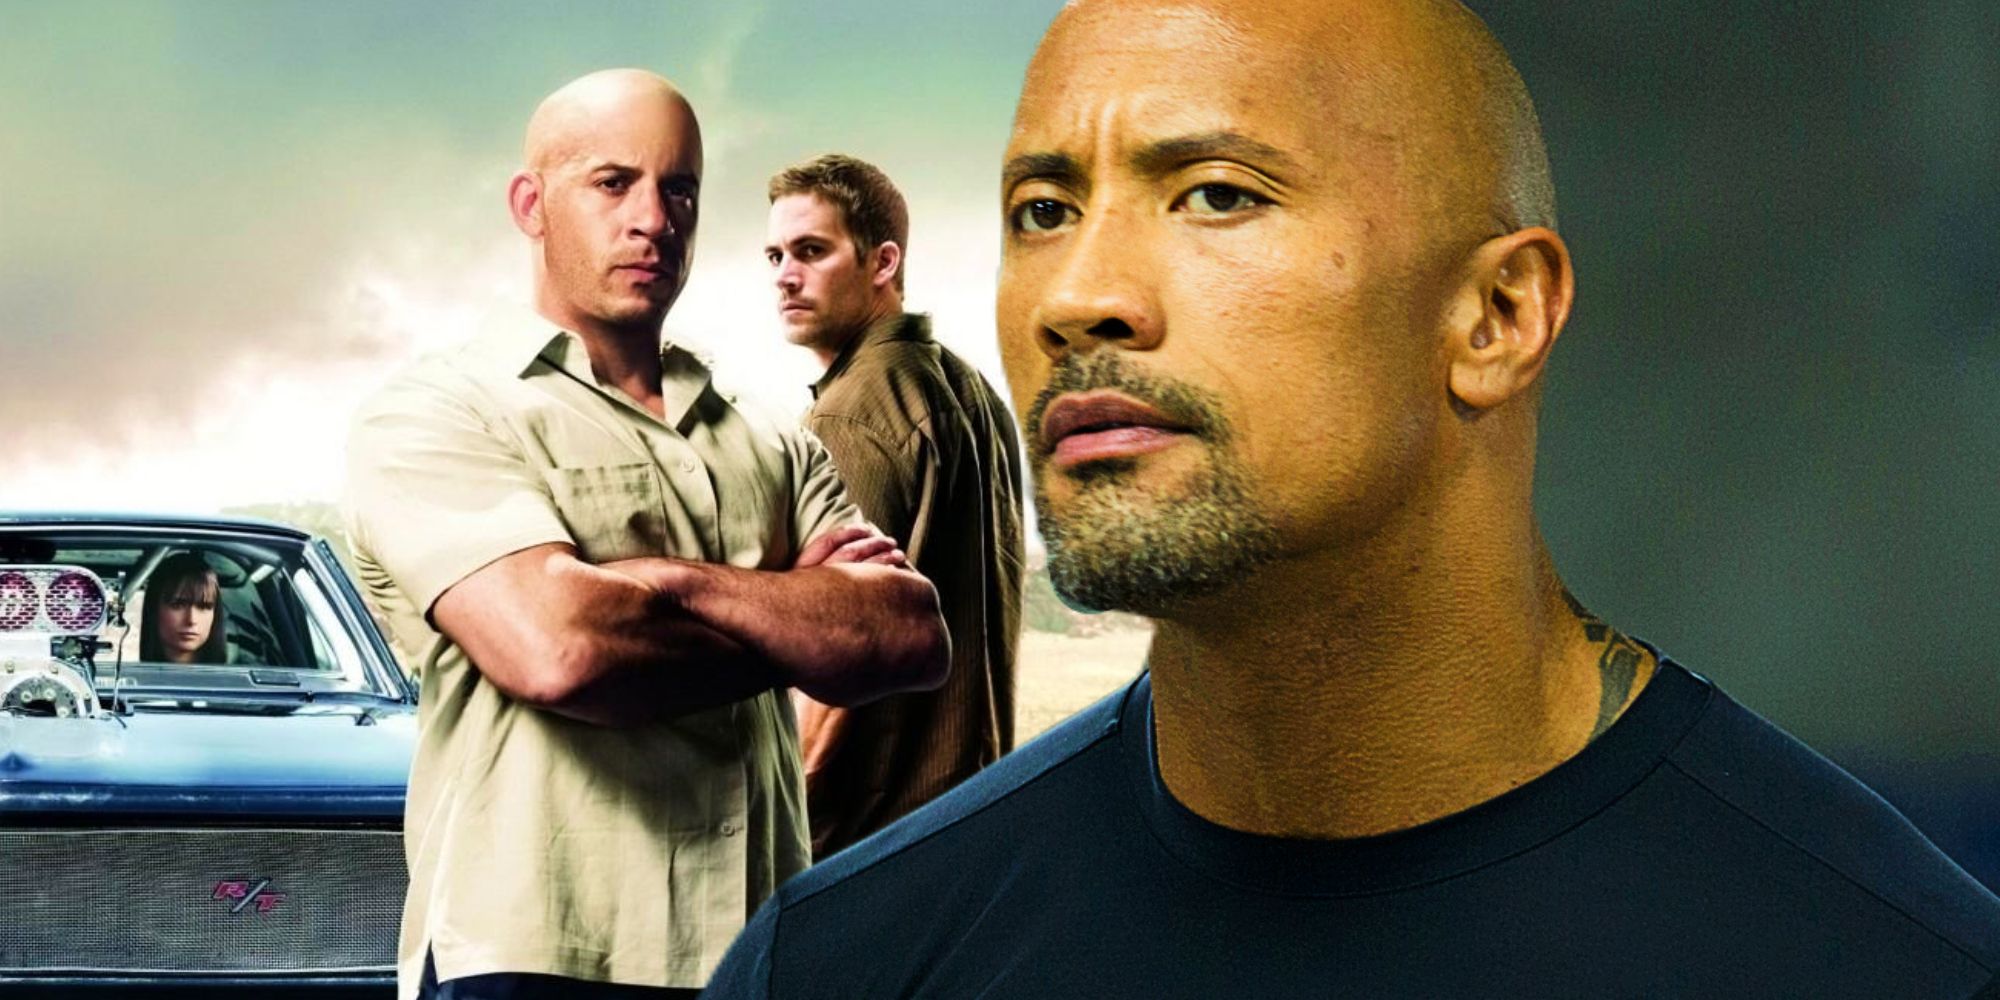 Vin Diesel as Toretto, Paul Walker as Brian, and Dwayne Johnson as Hobbs